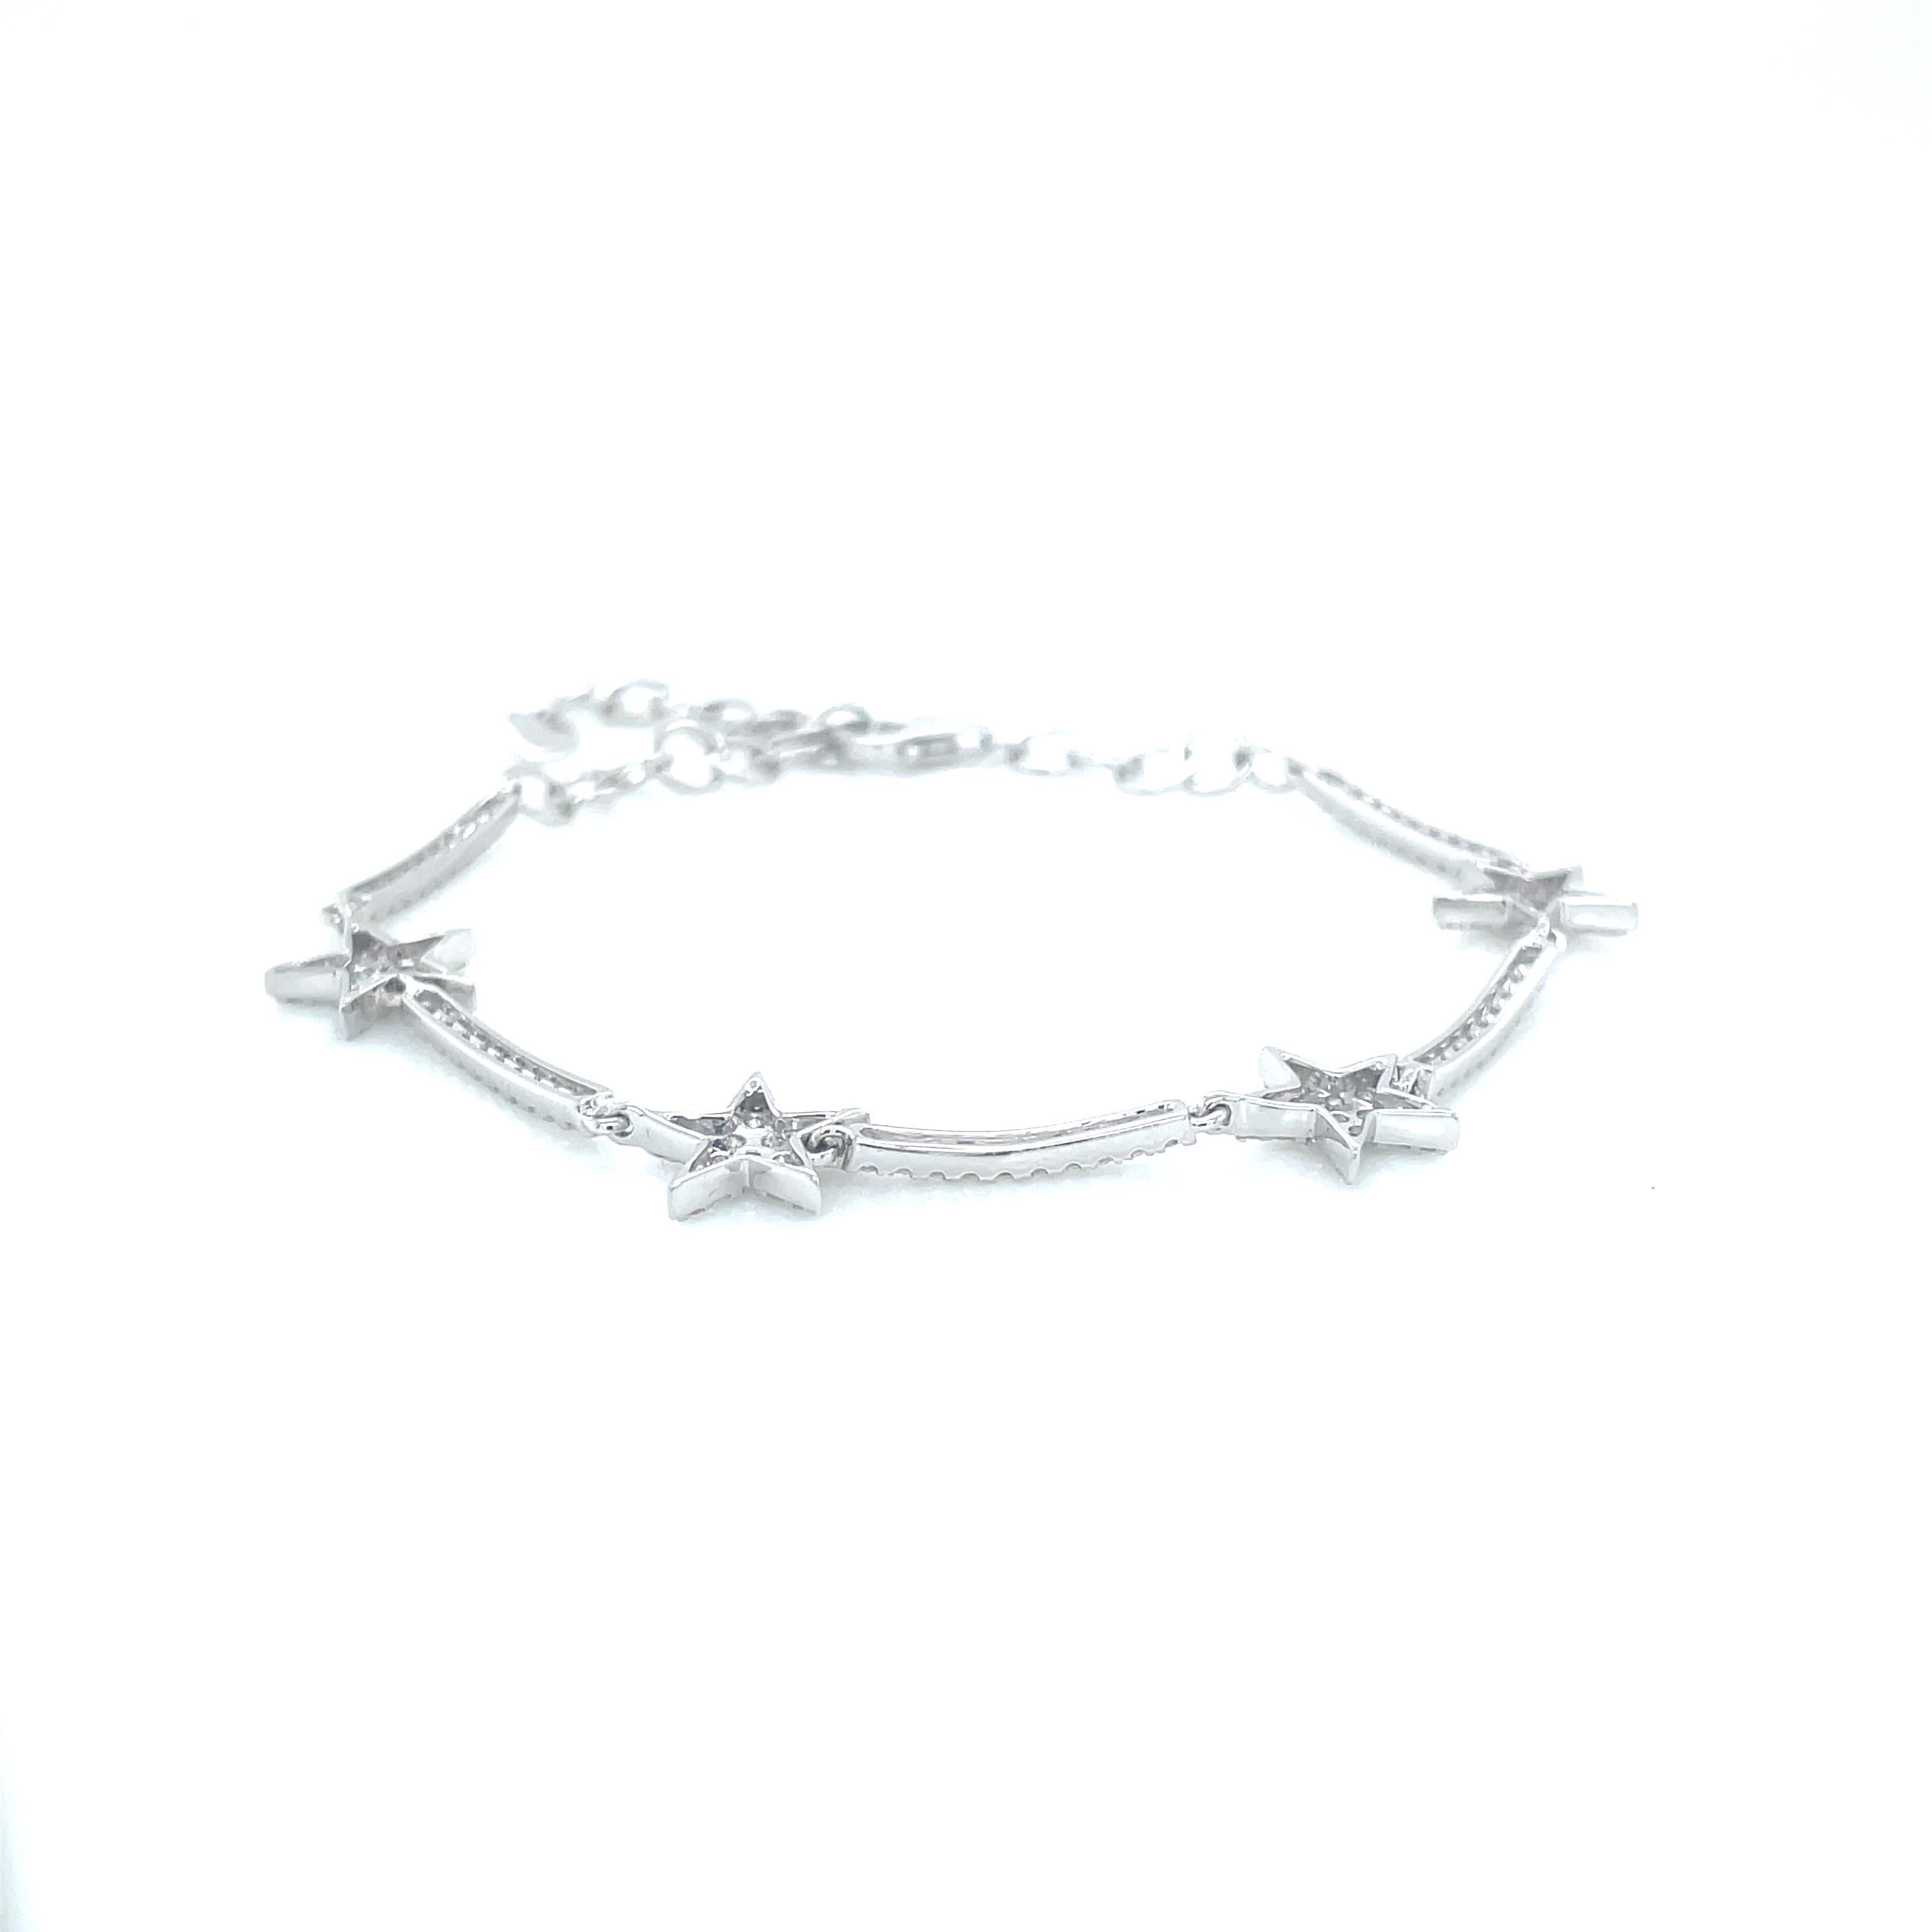 Aesthetic Movement 1.01 Carat Star Diamond Bracelet in 14K White Gold For Sale